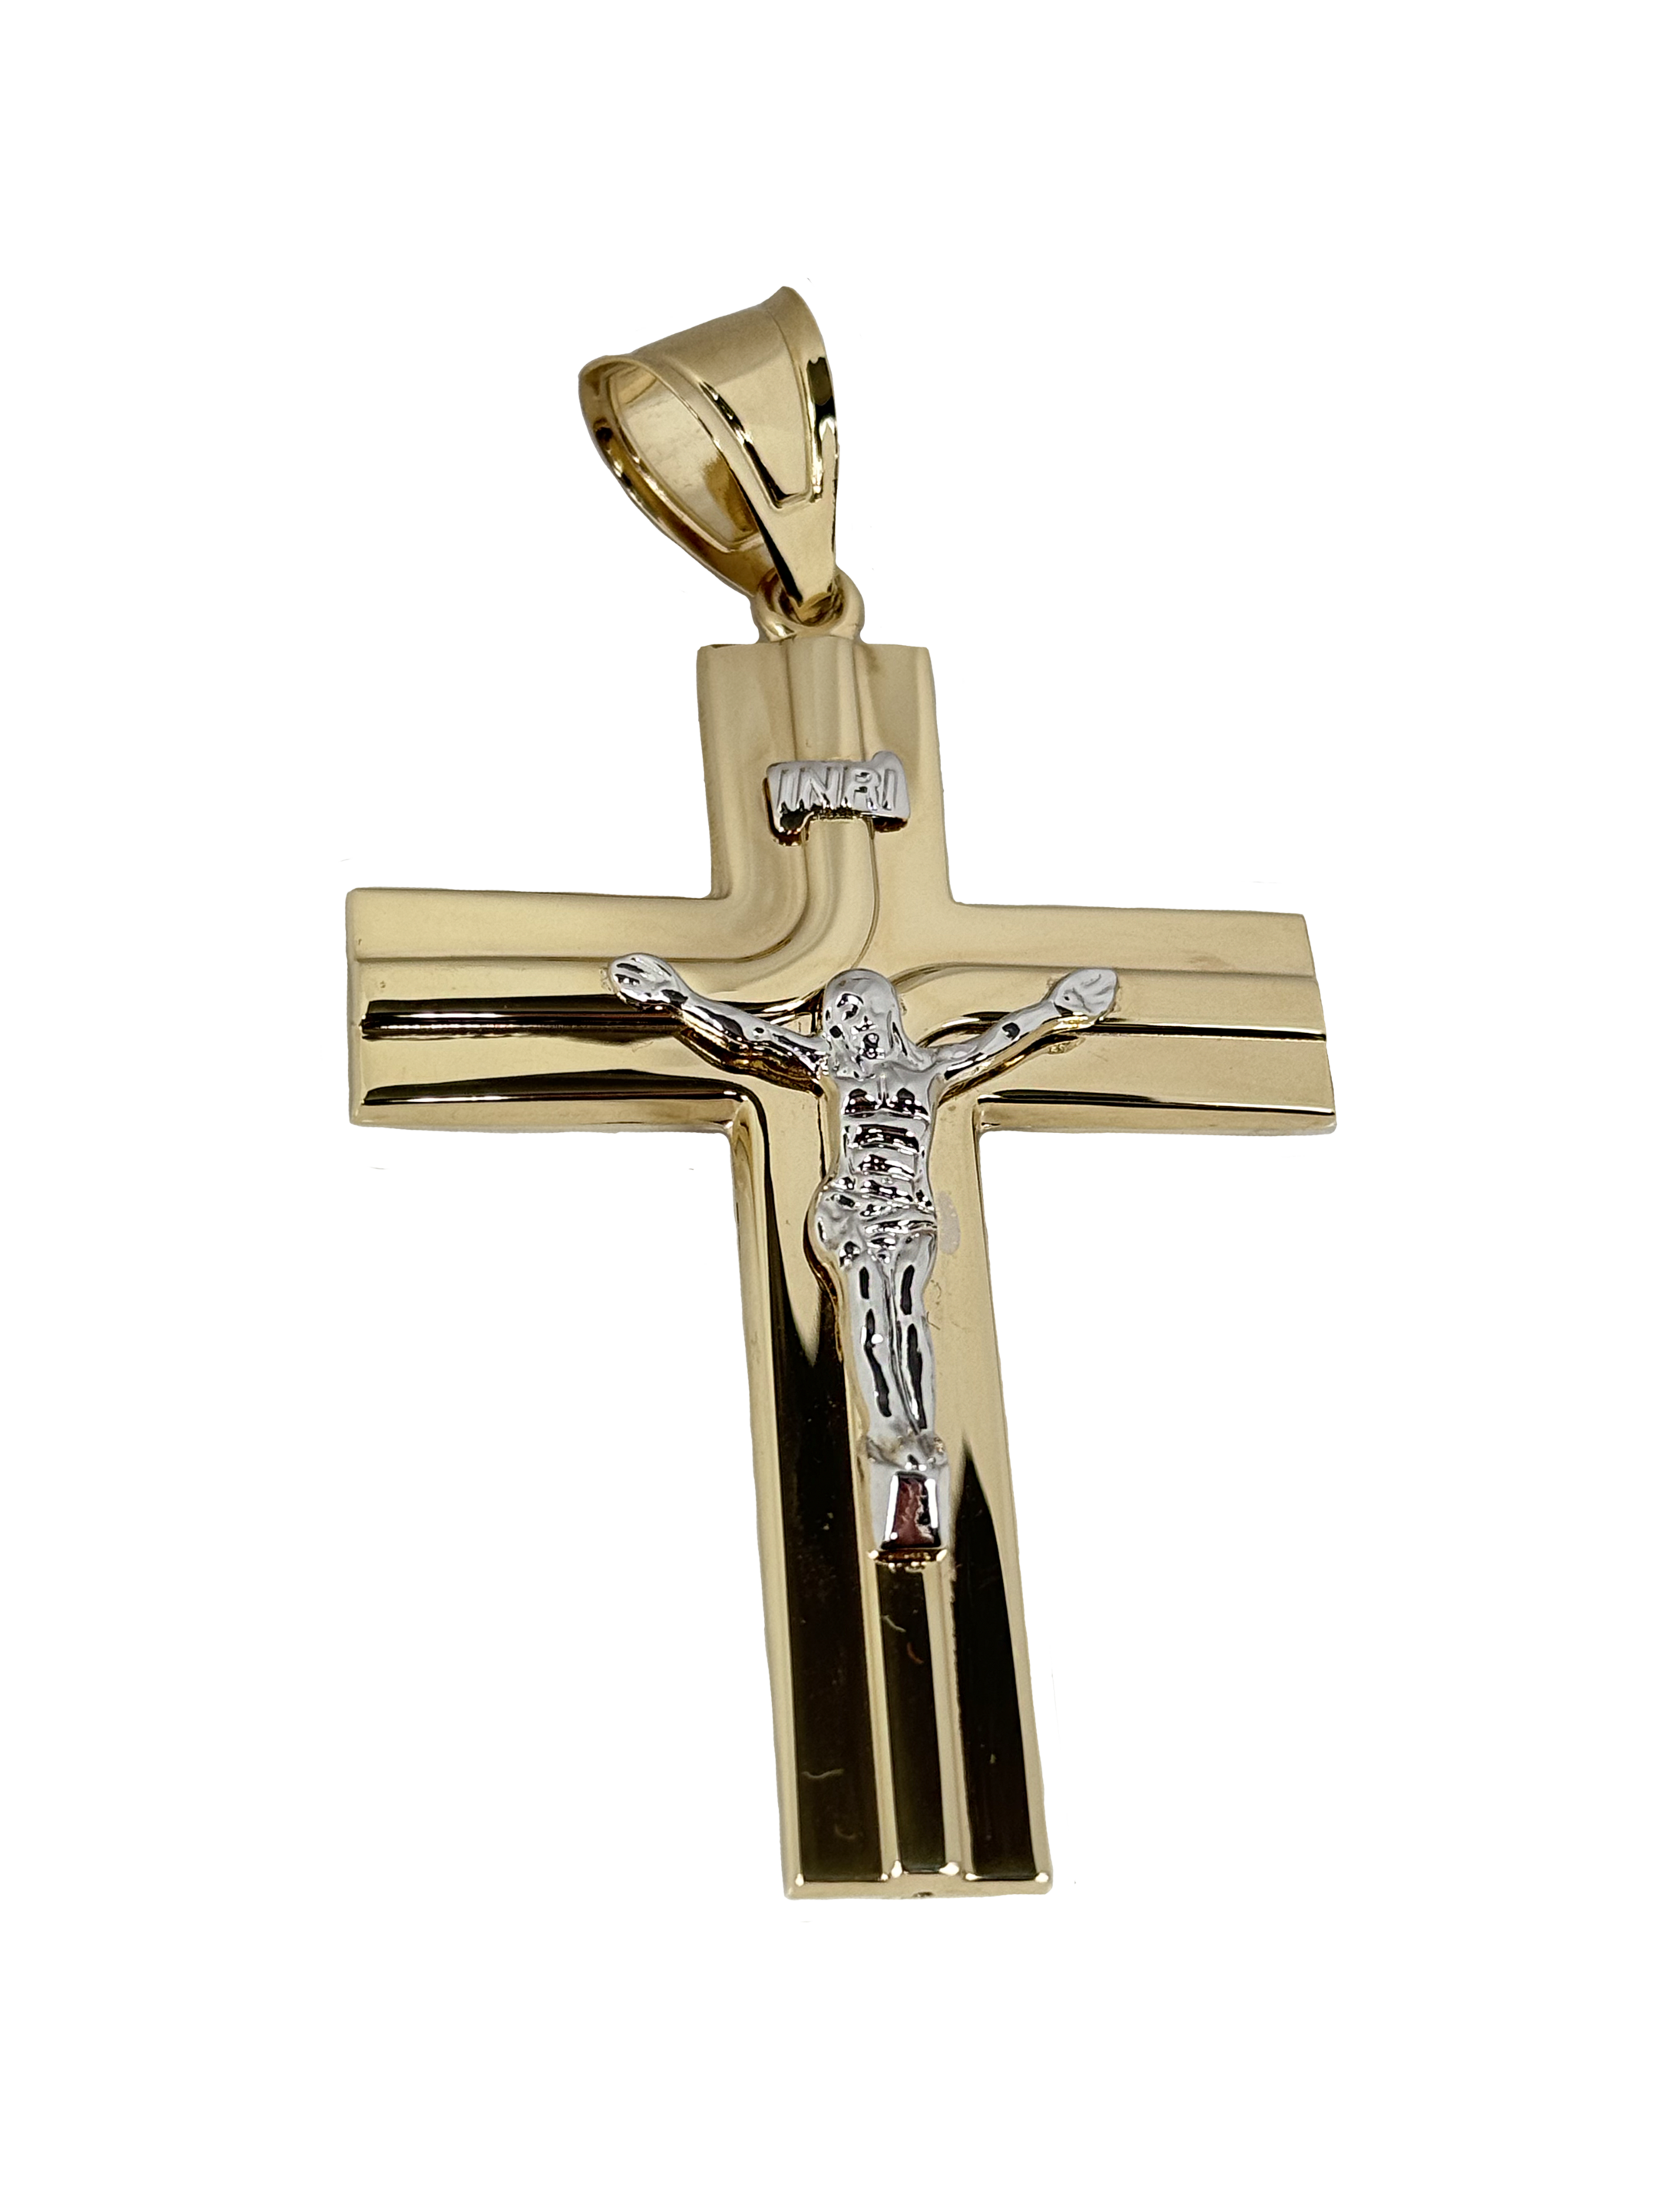 Guld tofarvet korsvedhæng med Jesus